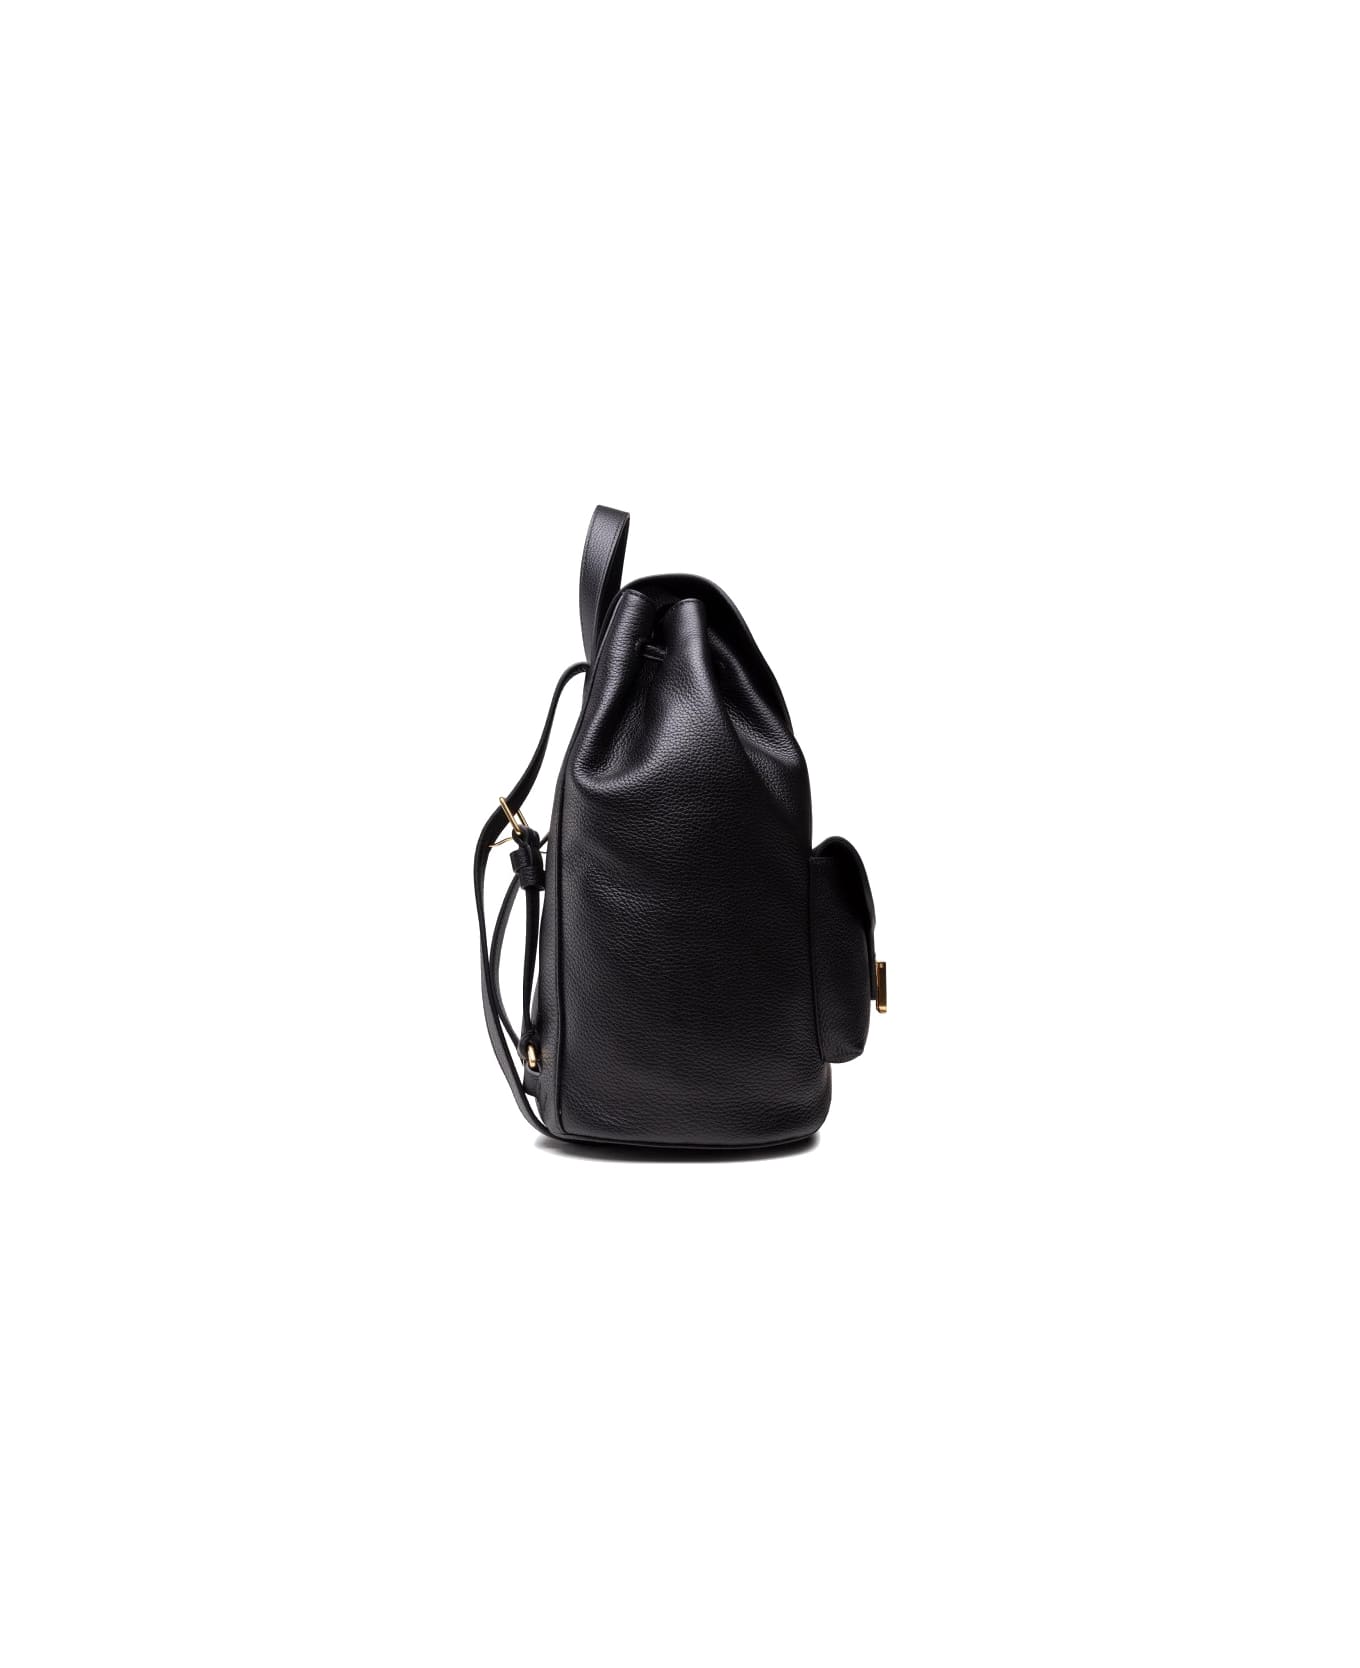 Coccinelle Beat Soft Black Backpack - Noir バックパック